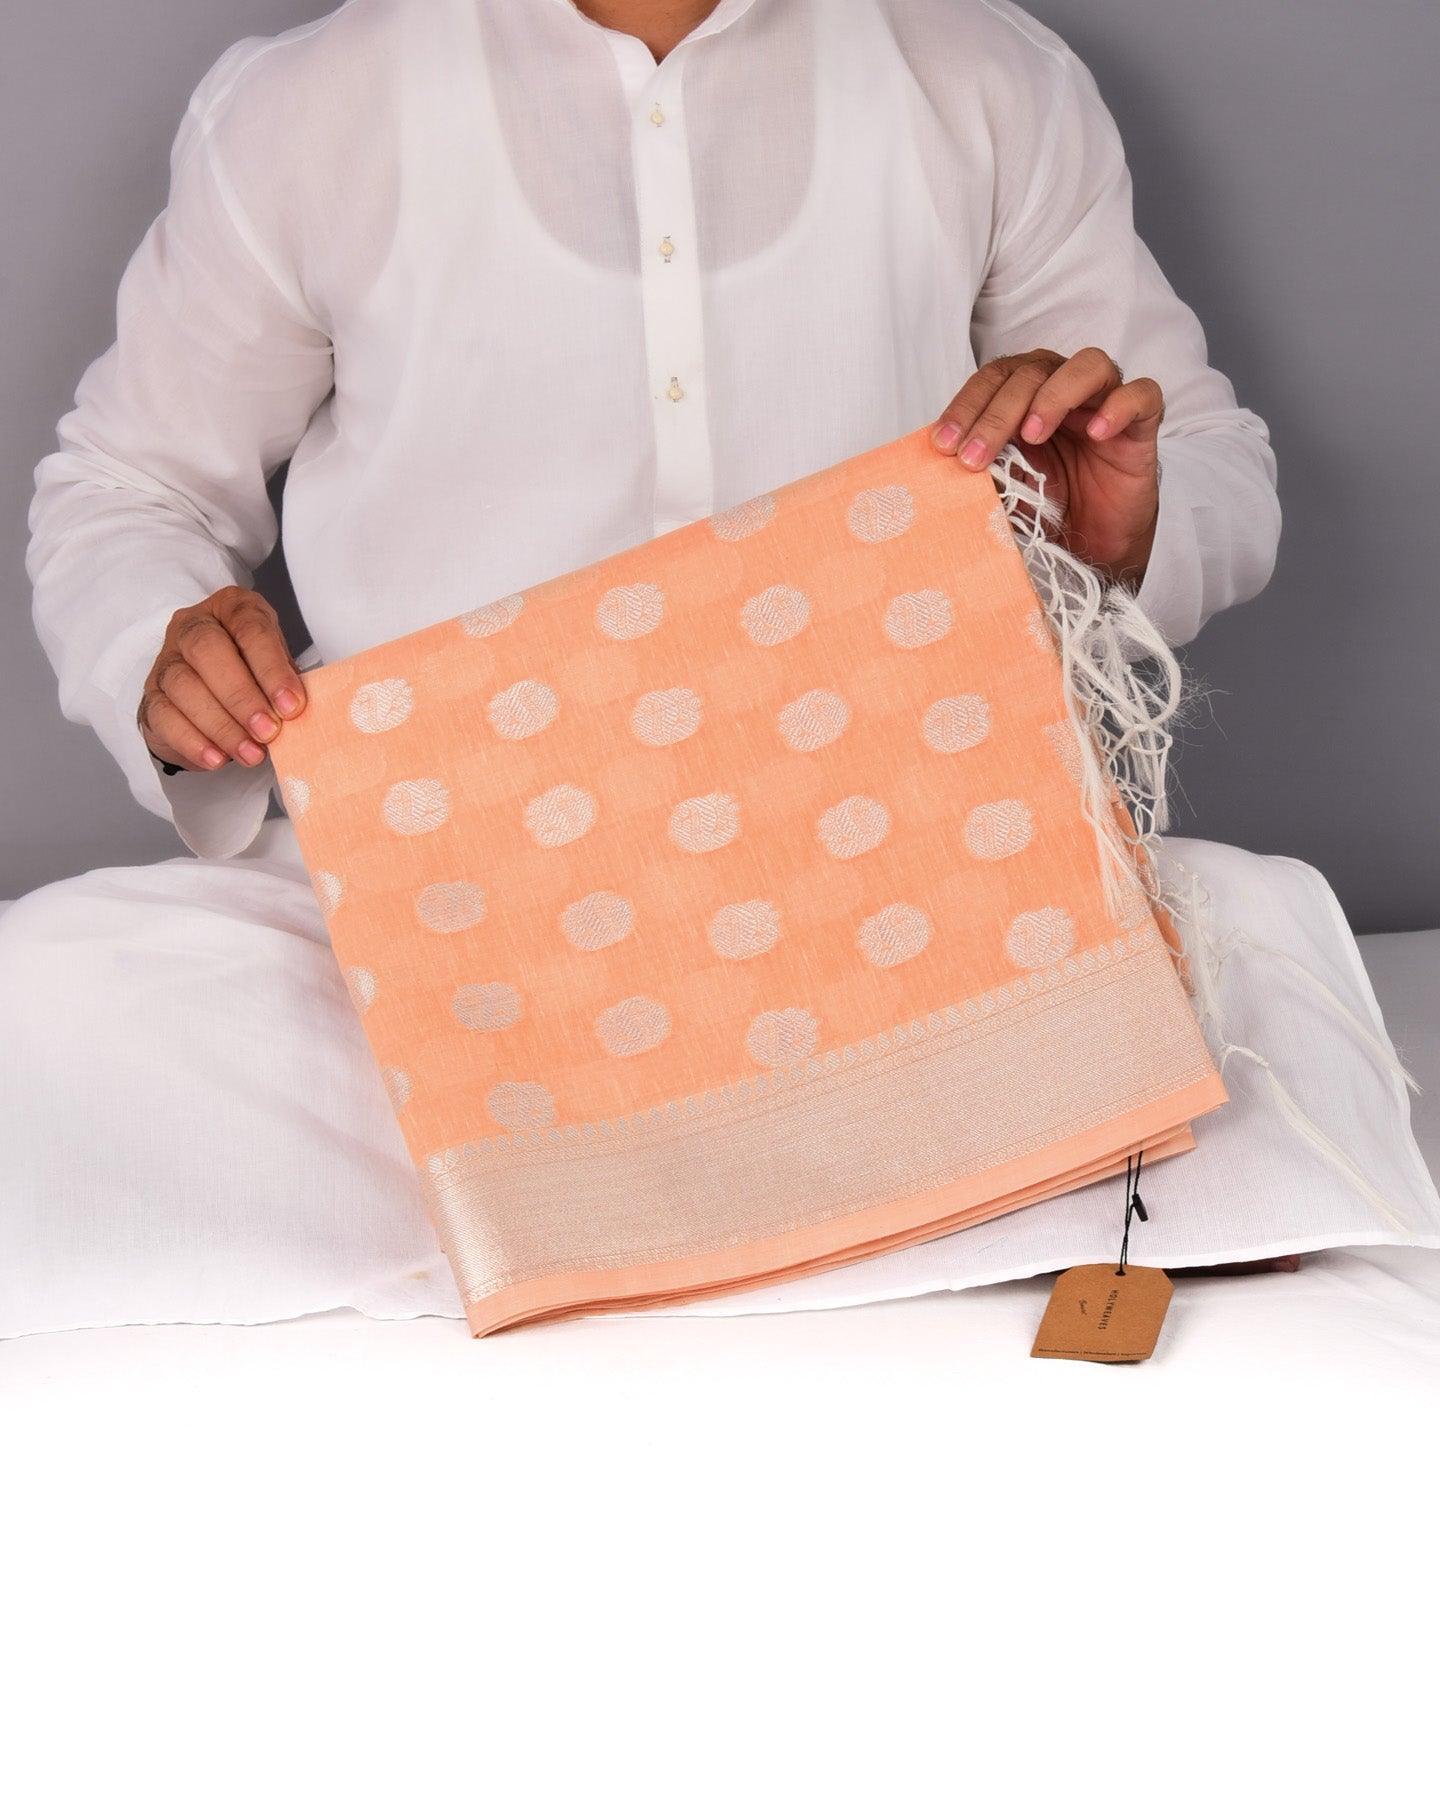 Pastel Peach Banarasi Linen Texture Silver Buti Cutwork Brocade Woven Cotton Silk Saree - By HolyWeaves, Benares